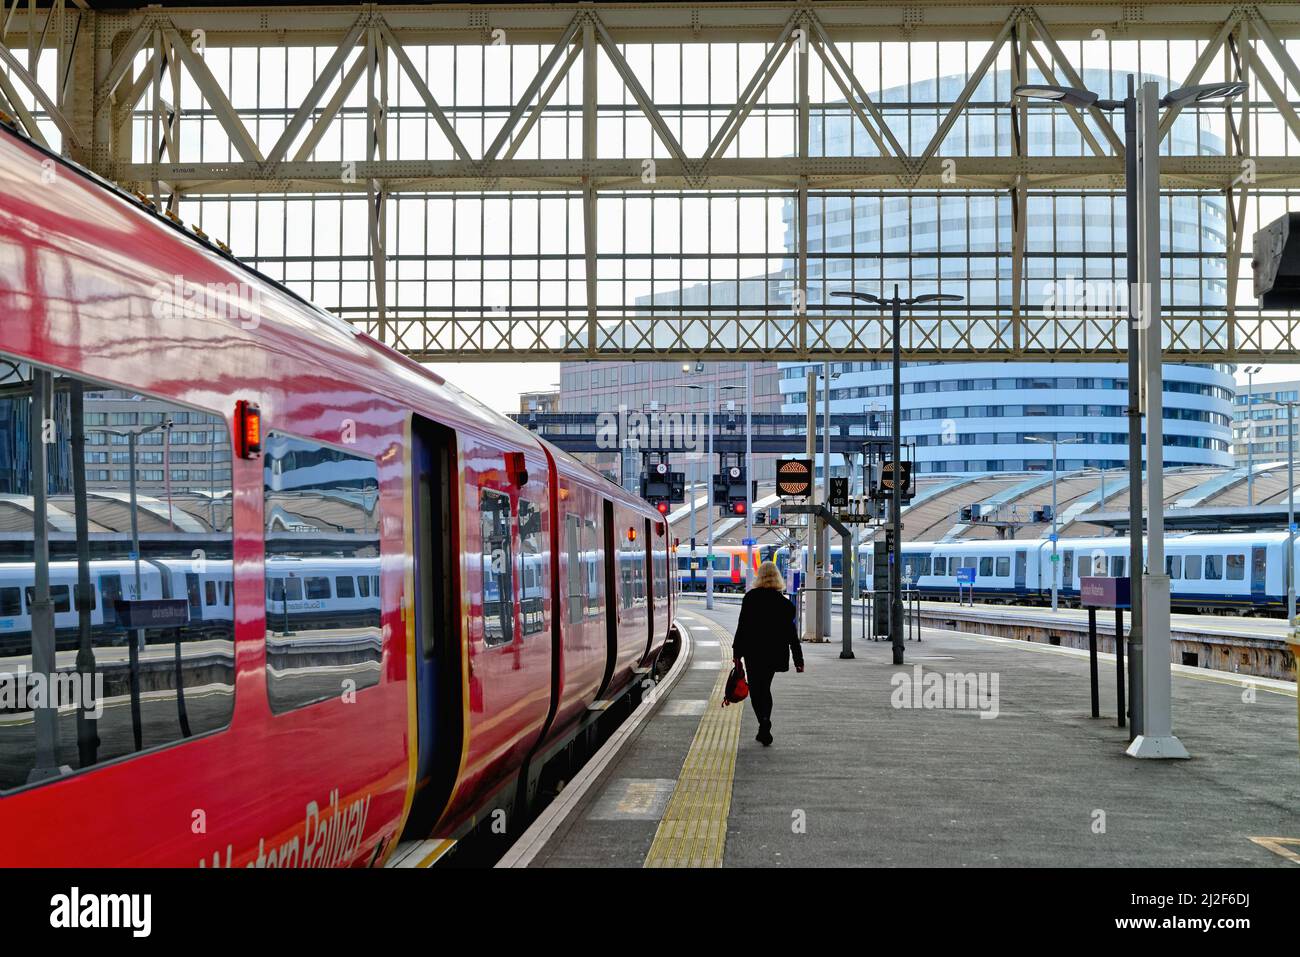 Un seul passager sur le point d'embarquer dans un train de banlieue South Western Railway à la gare de Waterloo, Londres, Angleterre, Royaume-Uni Banque D'Images